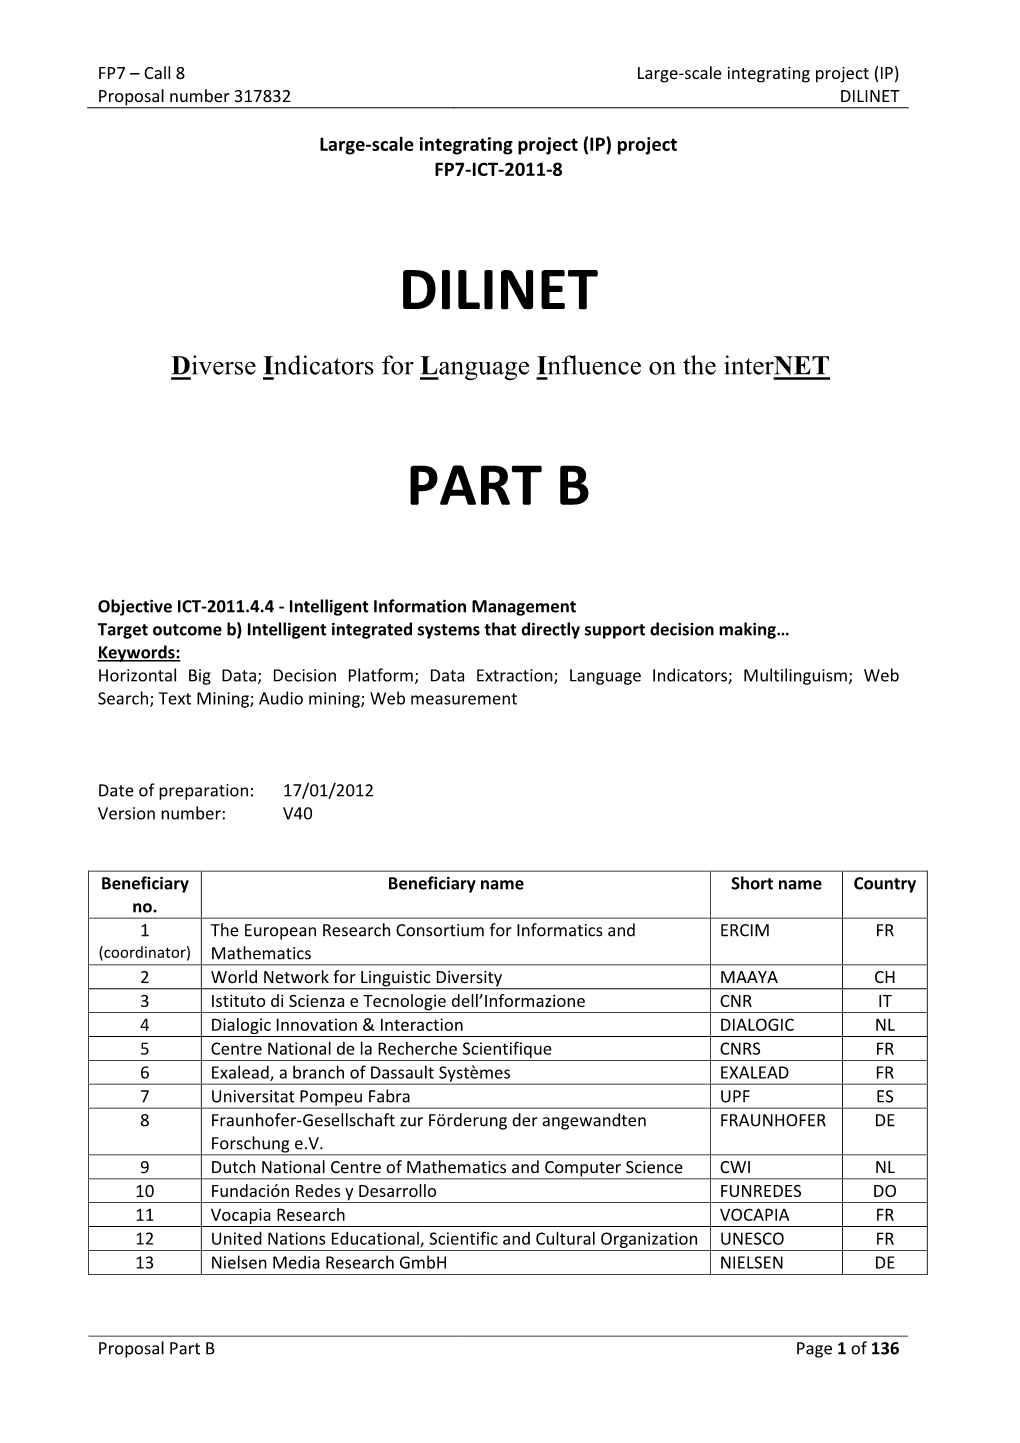 Dilinet Part B